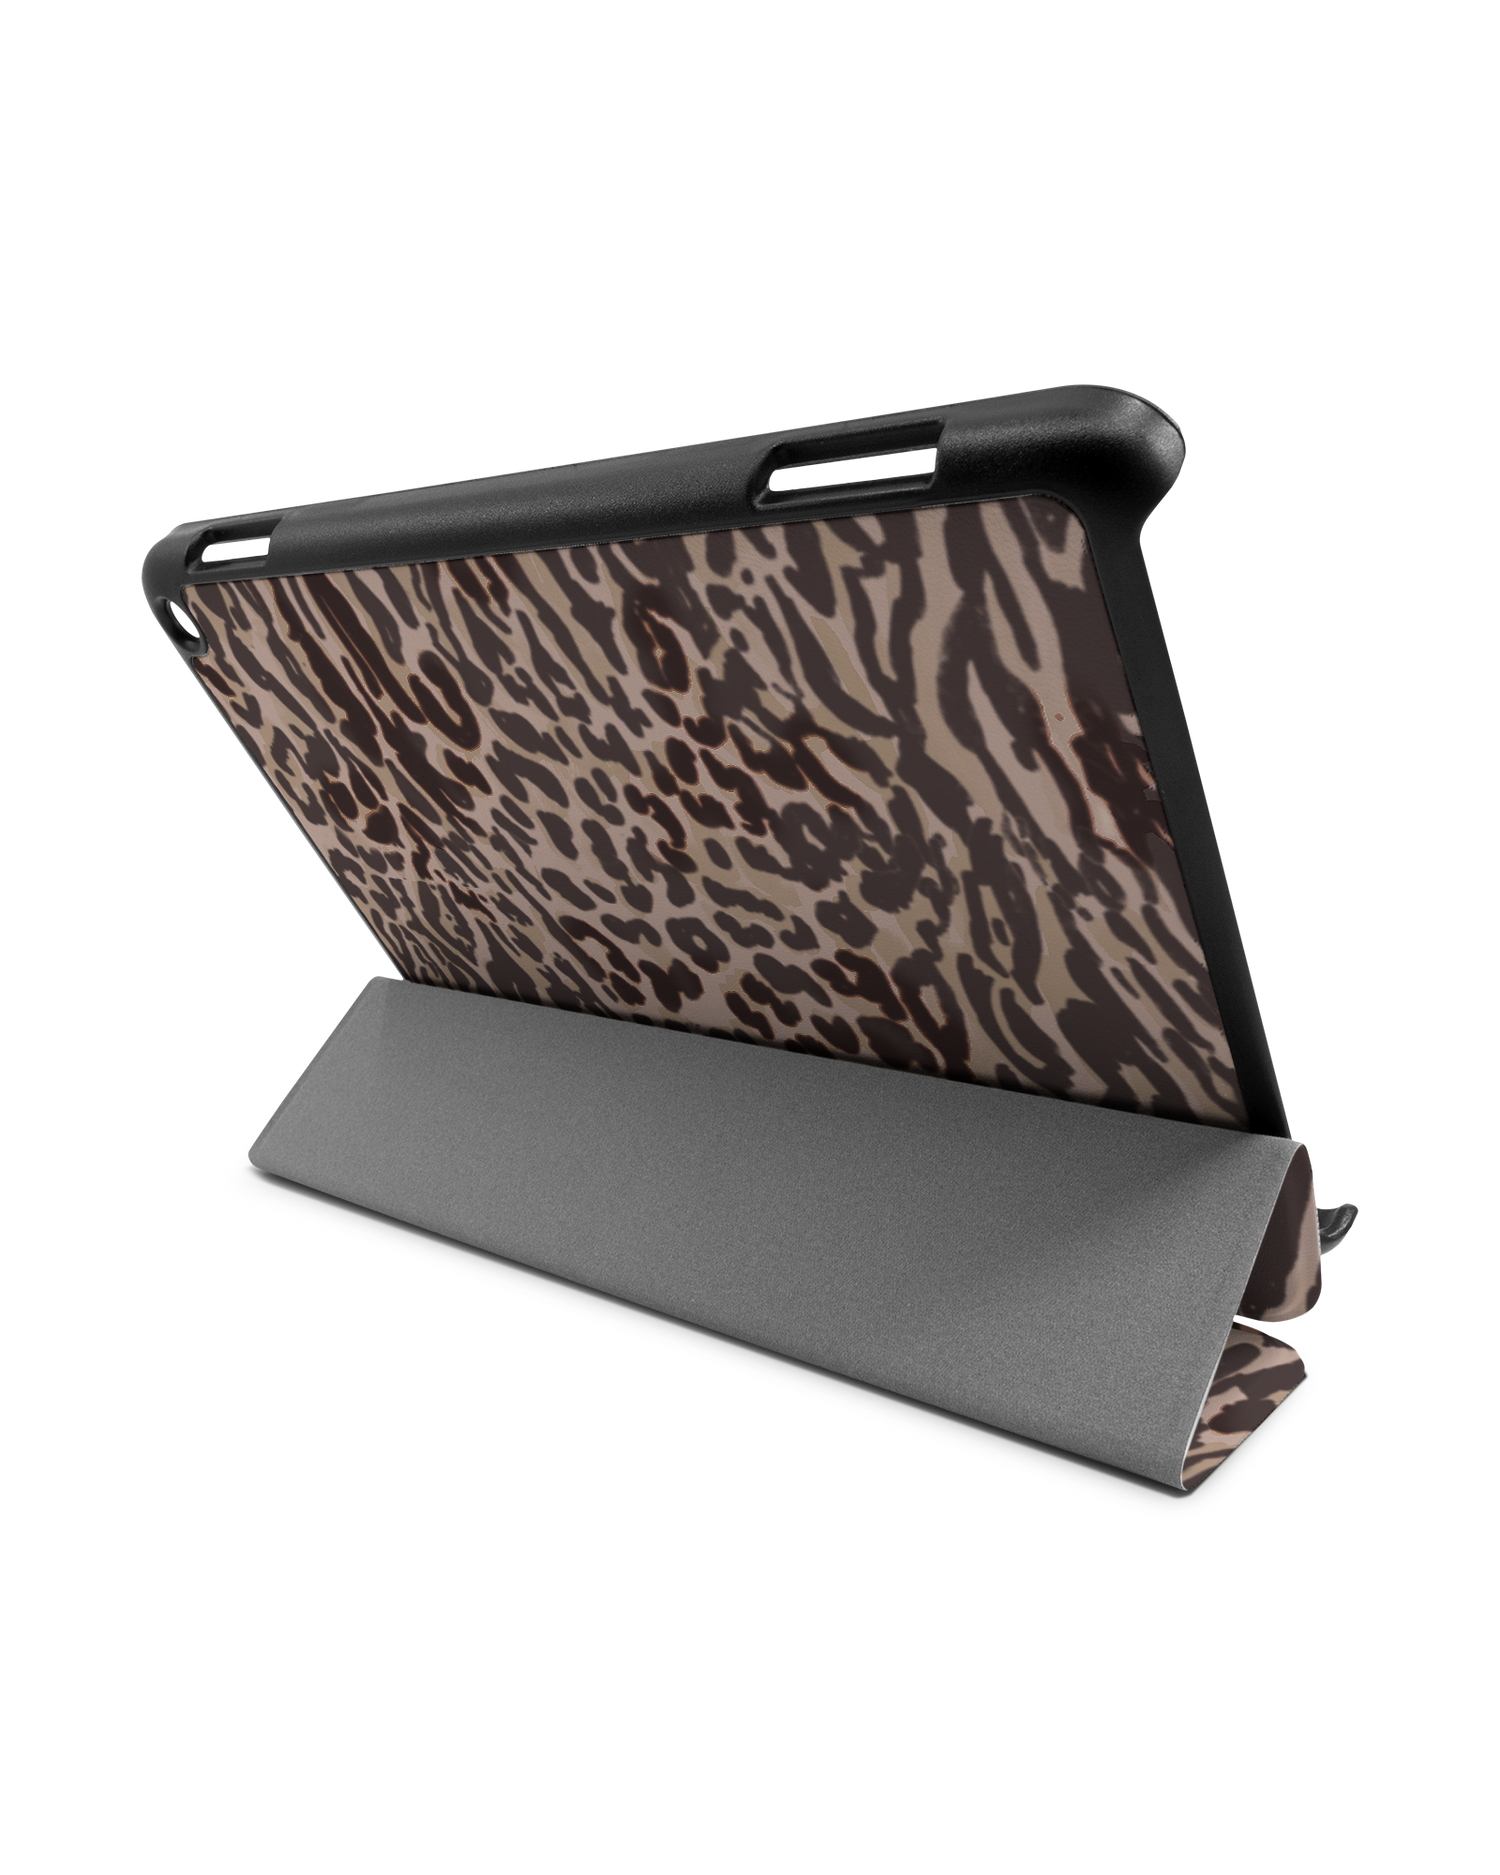 Animal Skin Tough Love Tablet Smart Case für Amazon Fire HD 8 (2022), Amazon Fire HD 8 Plus (2022), Amazon Fire HD 8 (2020), Amazon Fire HD 8 Plus (2020): Aufgestellt im Querformat